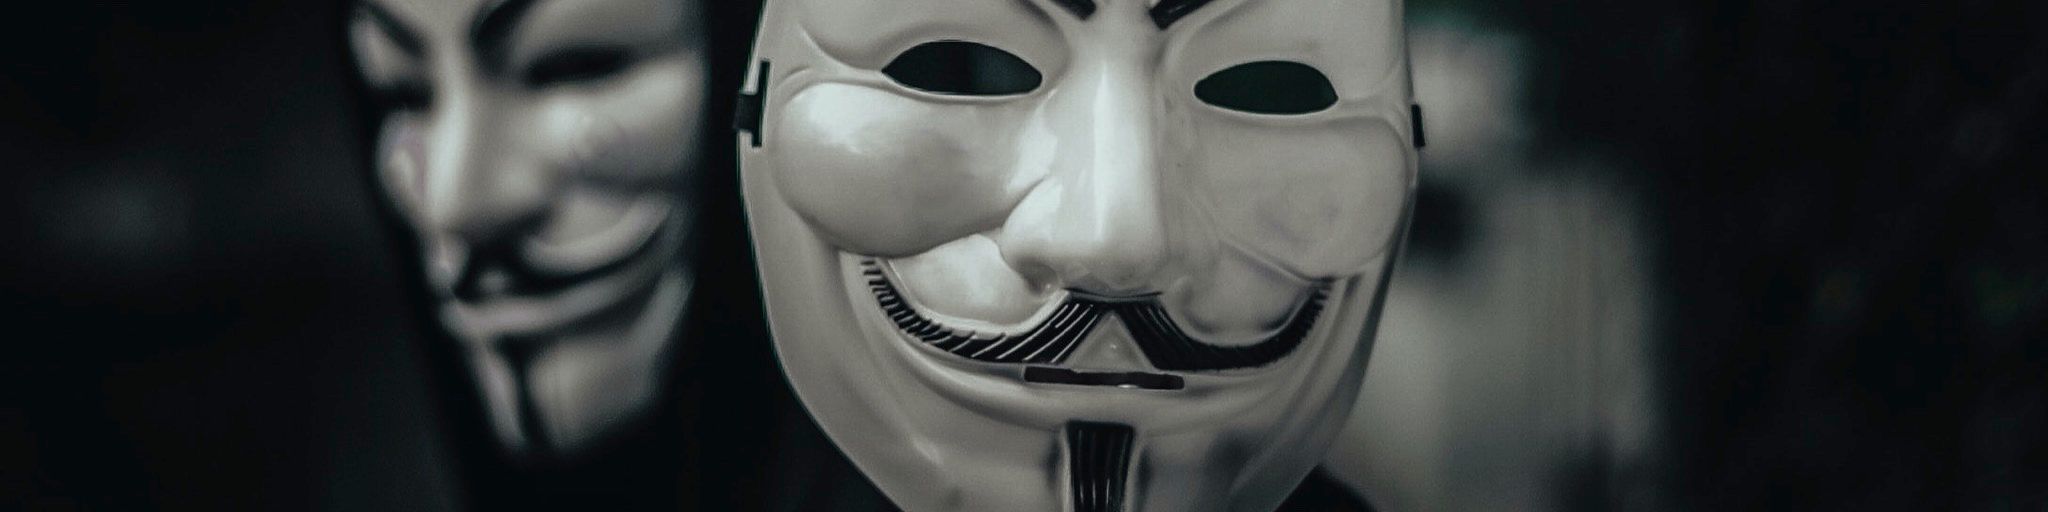 V for Vendetta-style Guy Fawes masks